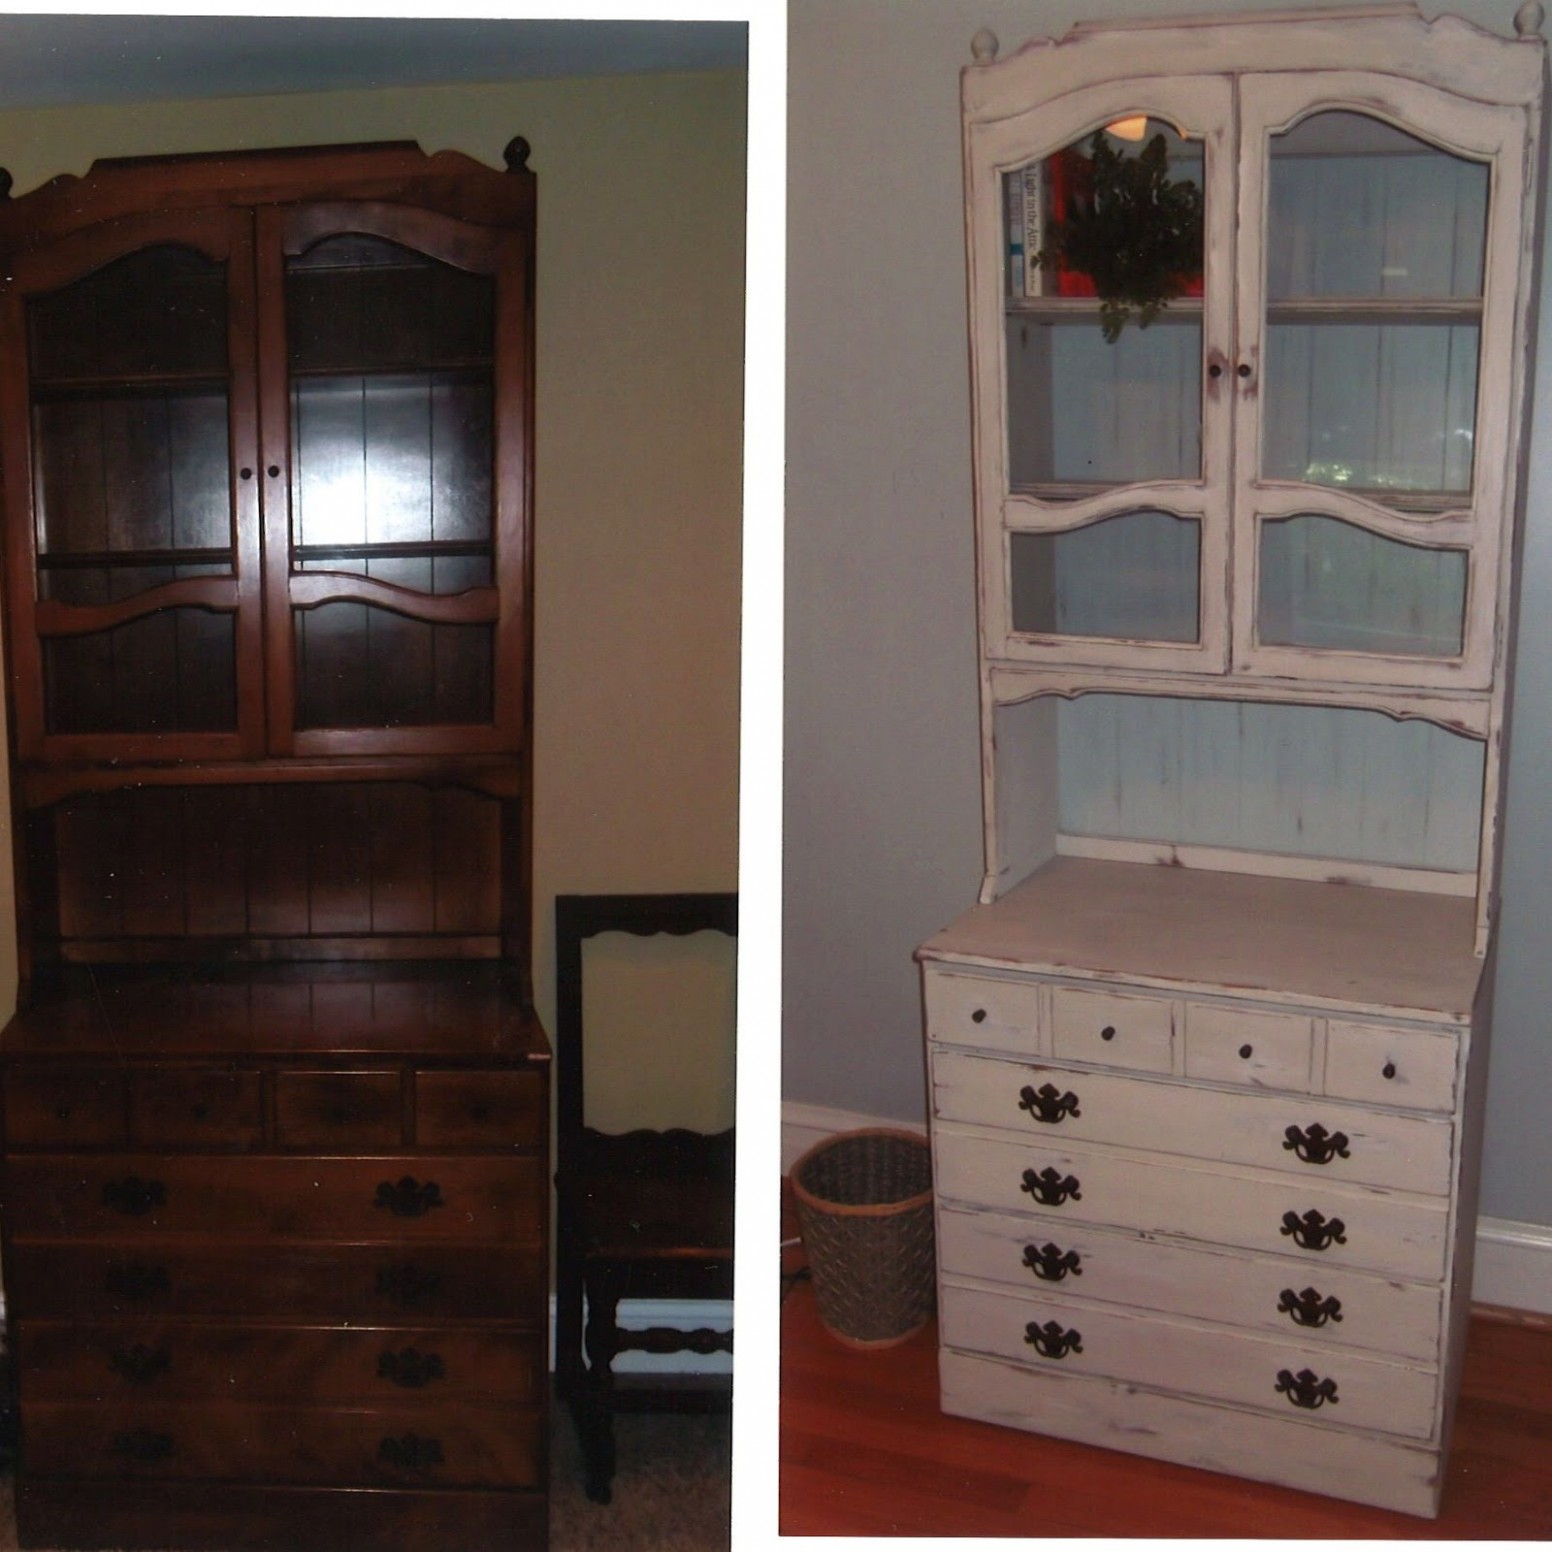 Dapperhouse Annie Sloan Chalk Paint Furniture Re Do Before & After Annie Sloan Chalk Paint Varnish